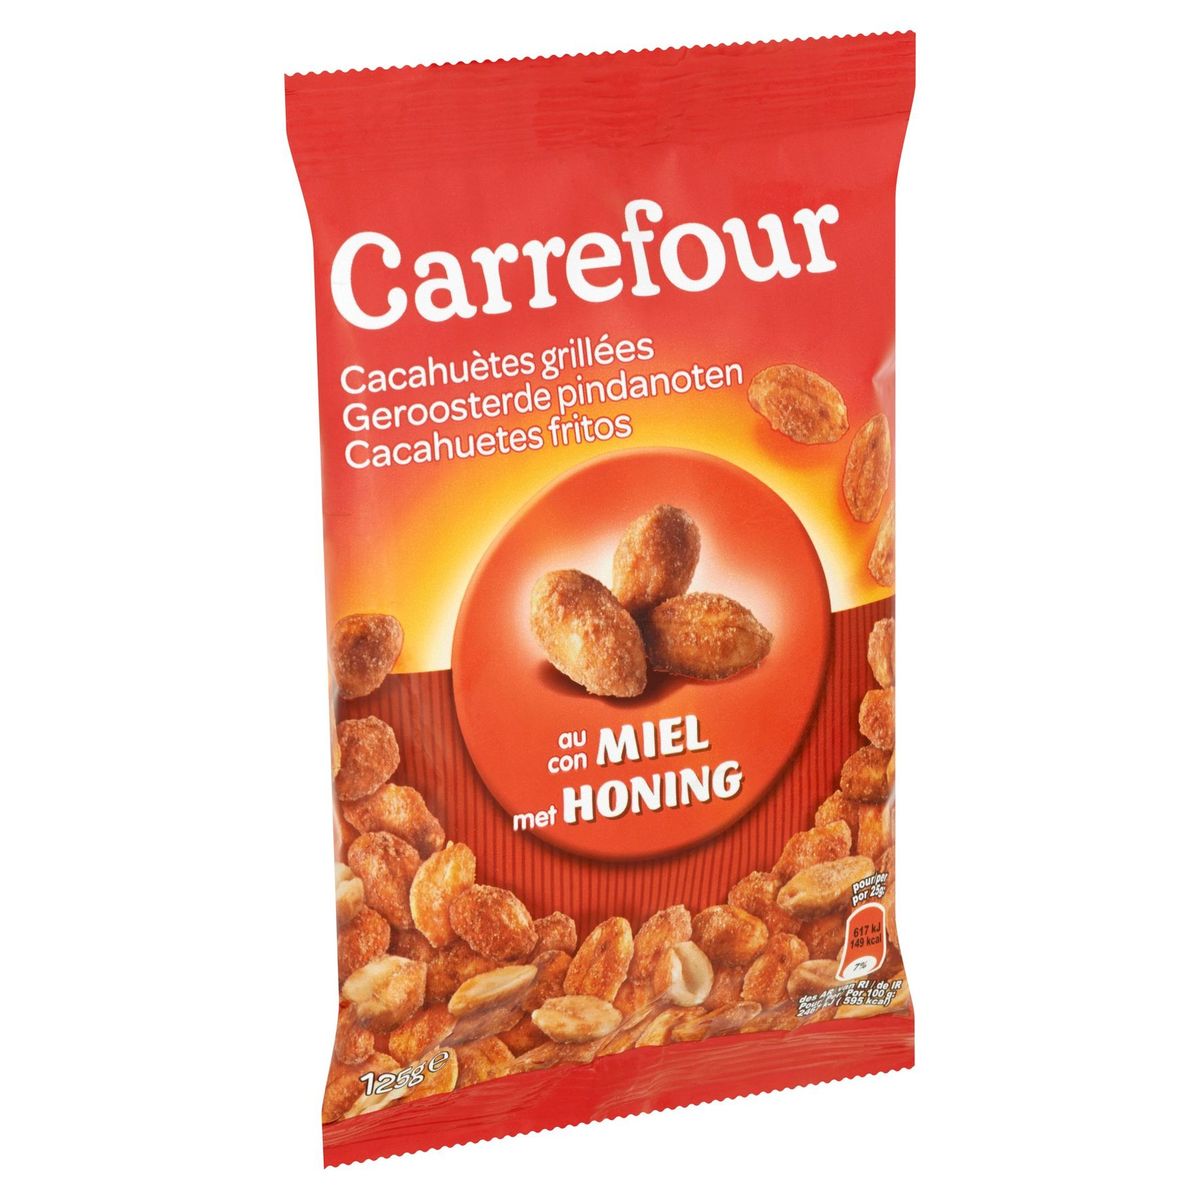 Carrefour Geroosterde Pindanoten met Honing 125 g